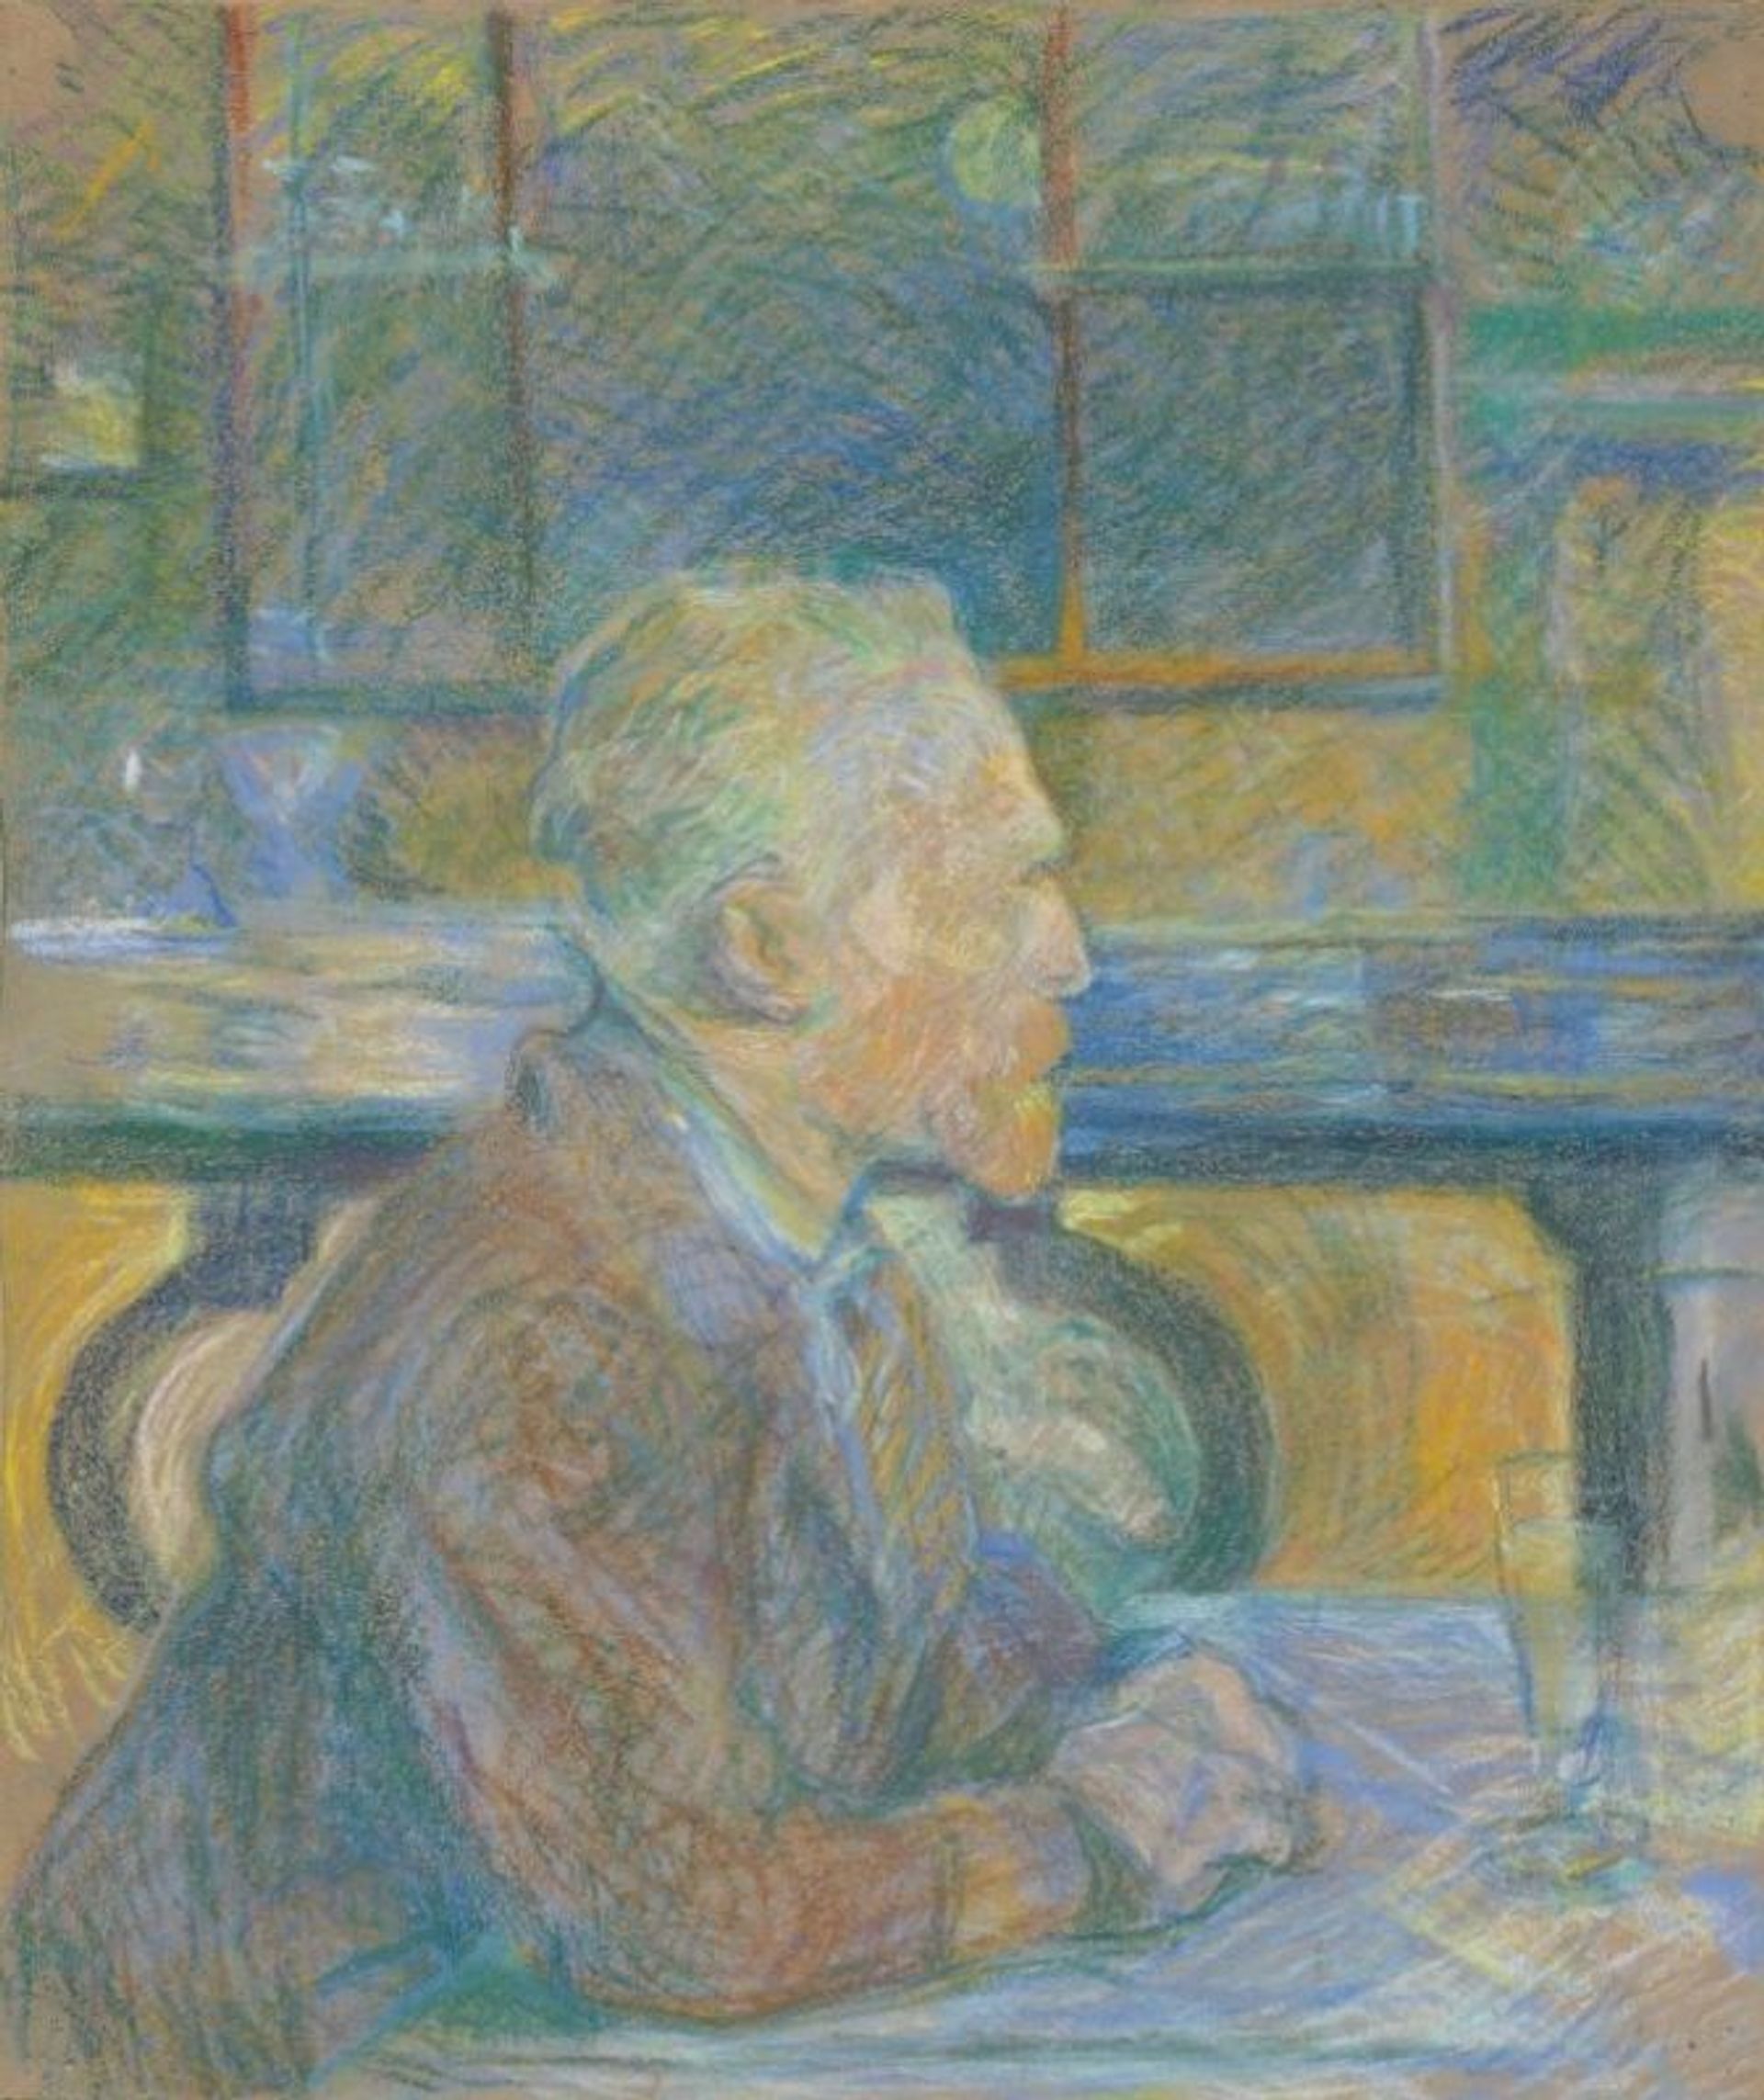 Henri de Toulouse-Lautrec (1864-1901), Portrait of Van Gogh (1887) Credit: Van Gogh Museum, Amsterdam (Vincent van Gogh Foundation